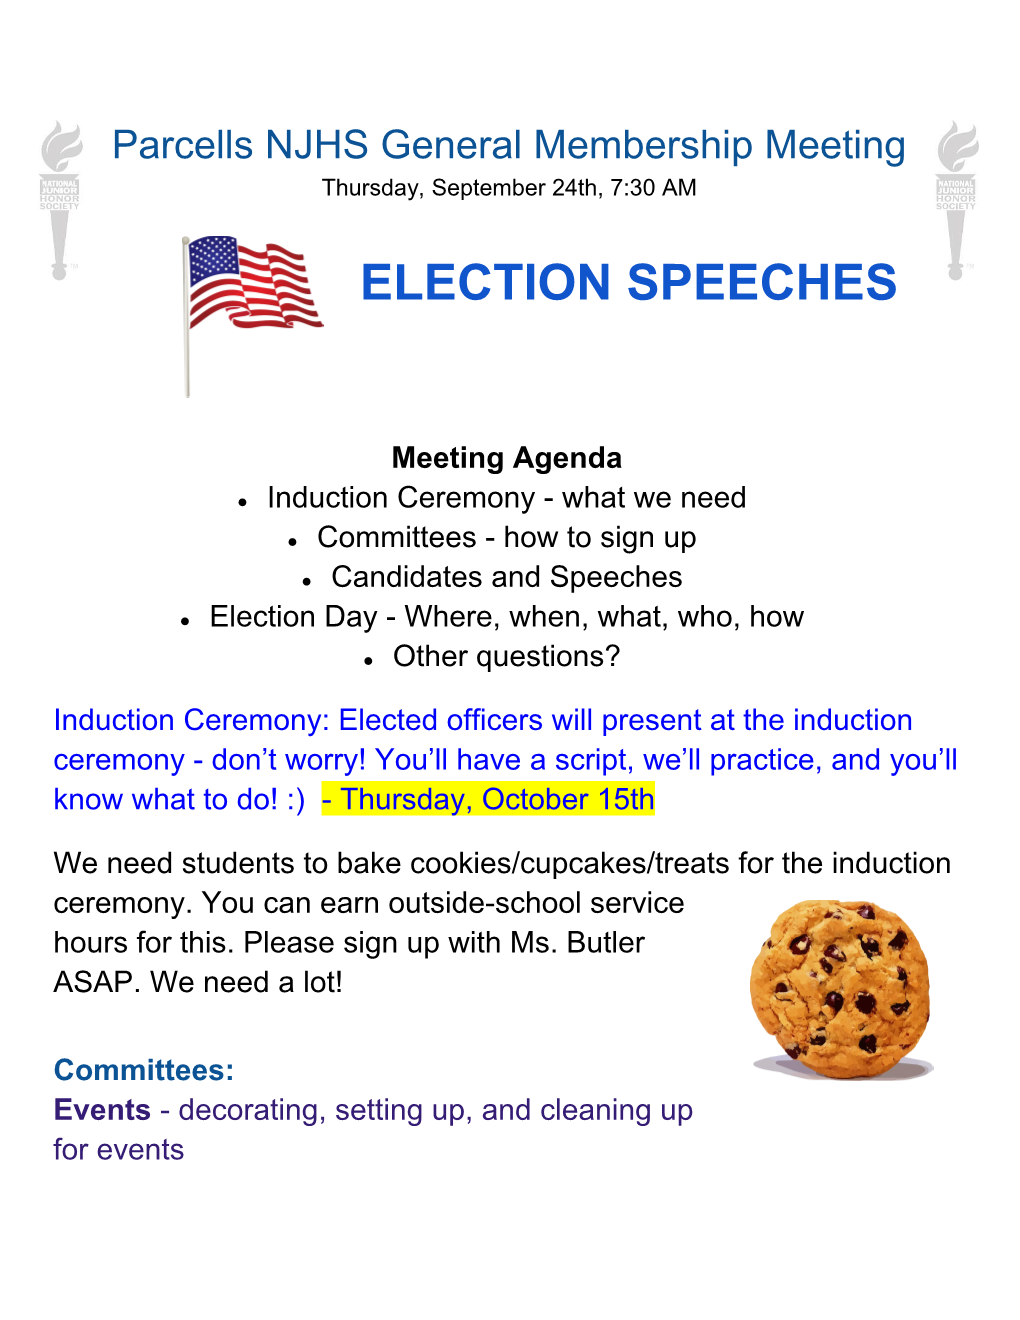 Election Speeches